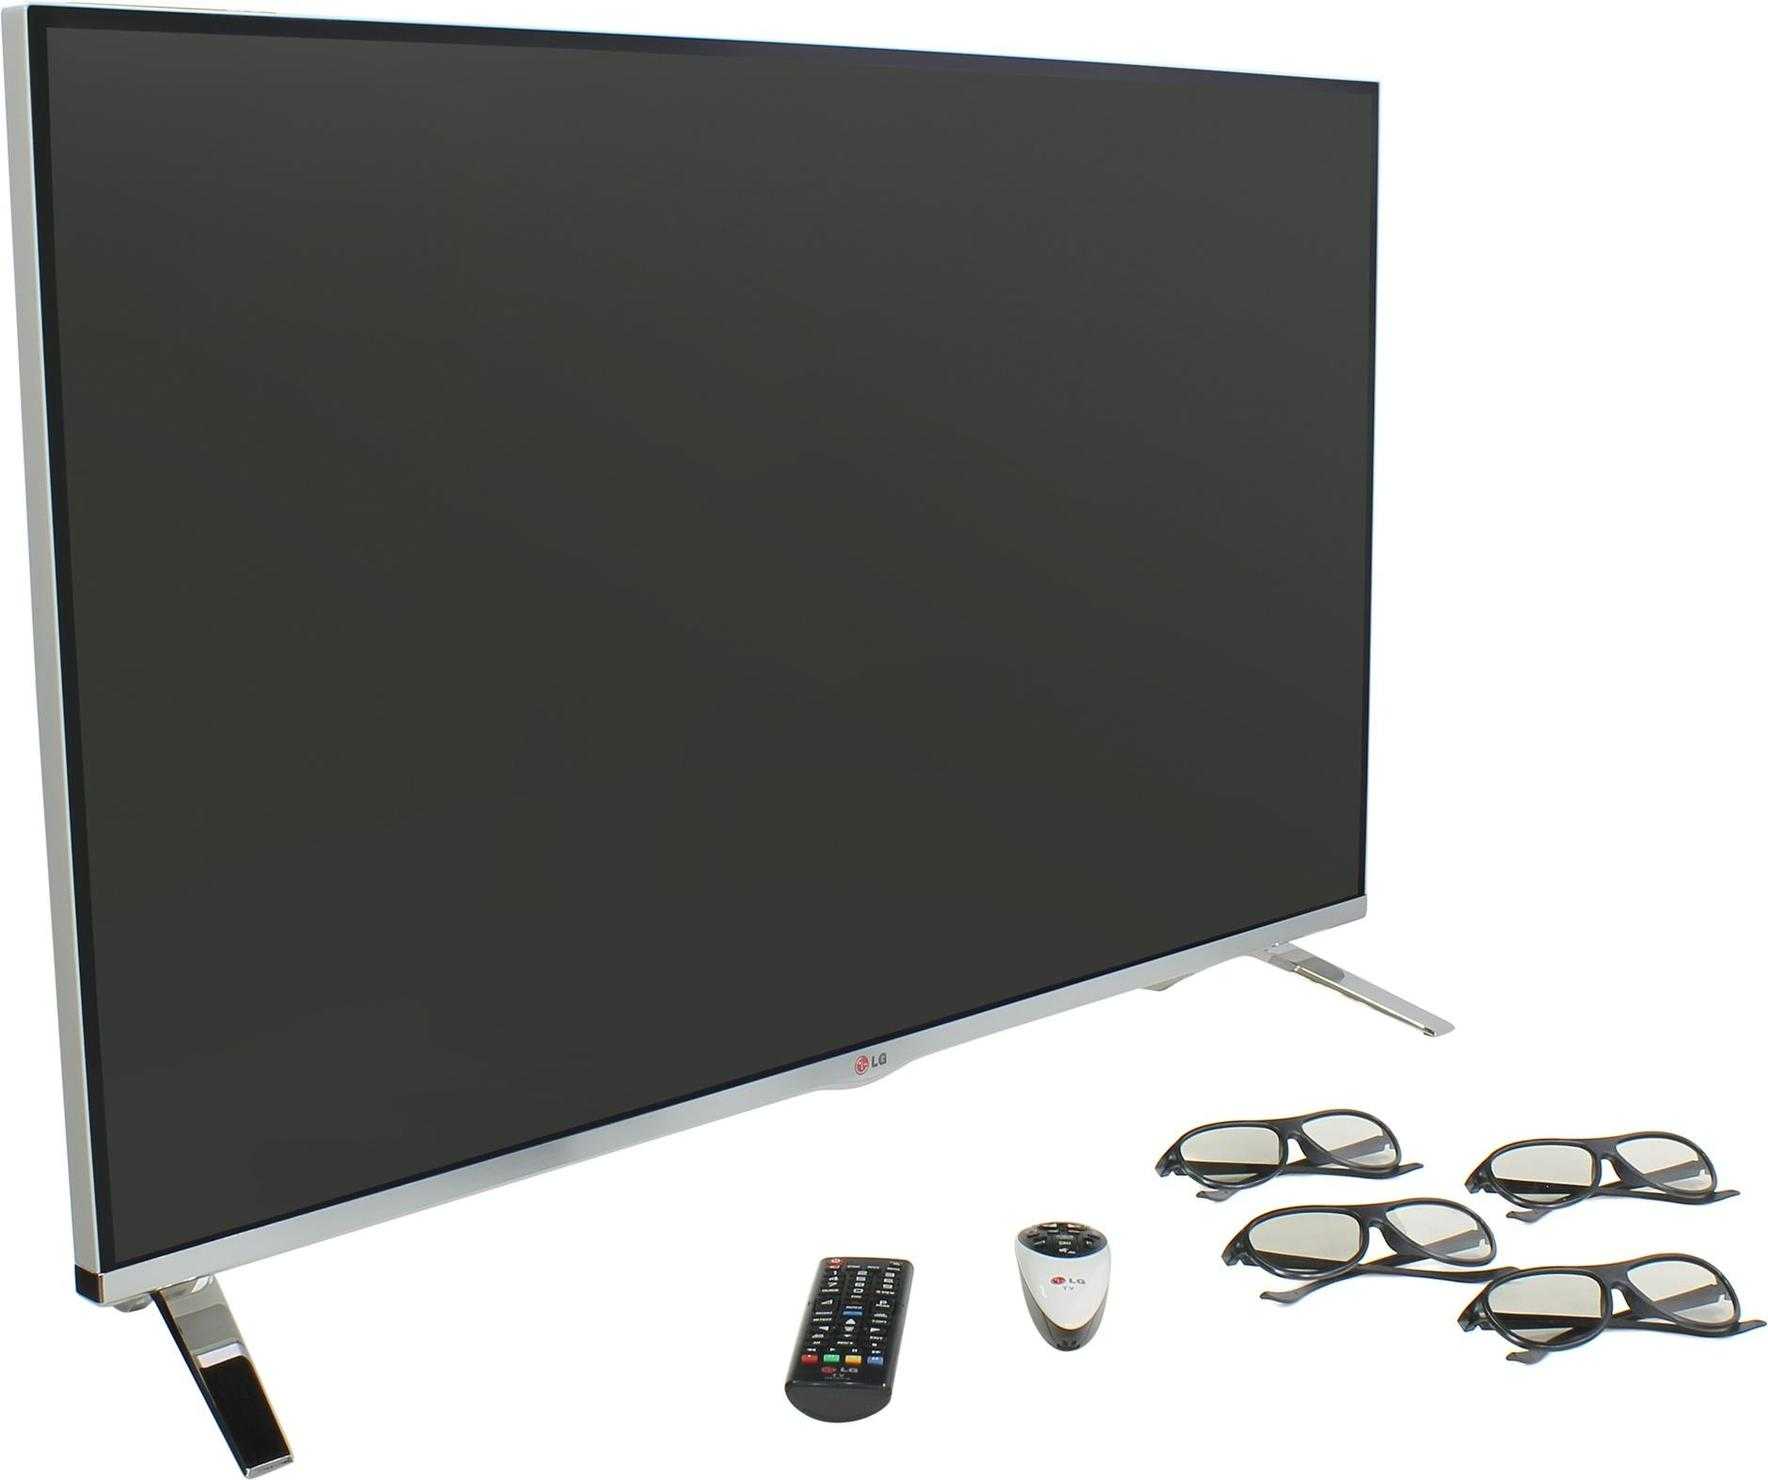 50" led жк телевизор lg 50un73506lb — купить, цена и характеристики, отзывы